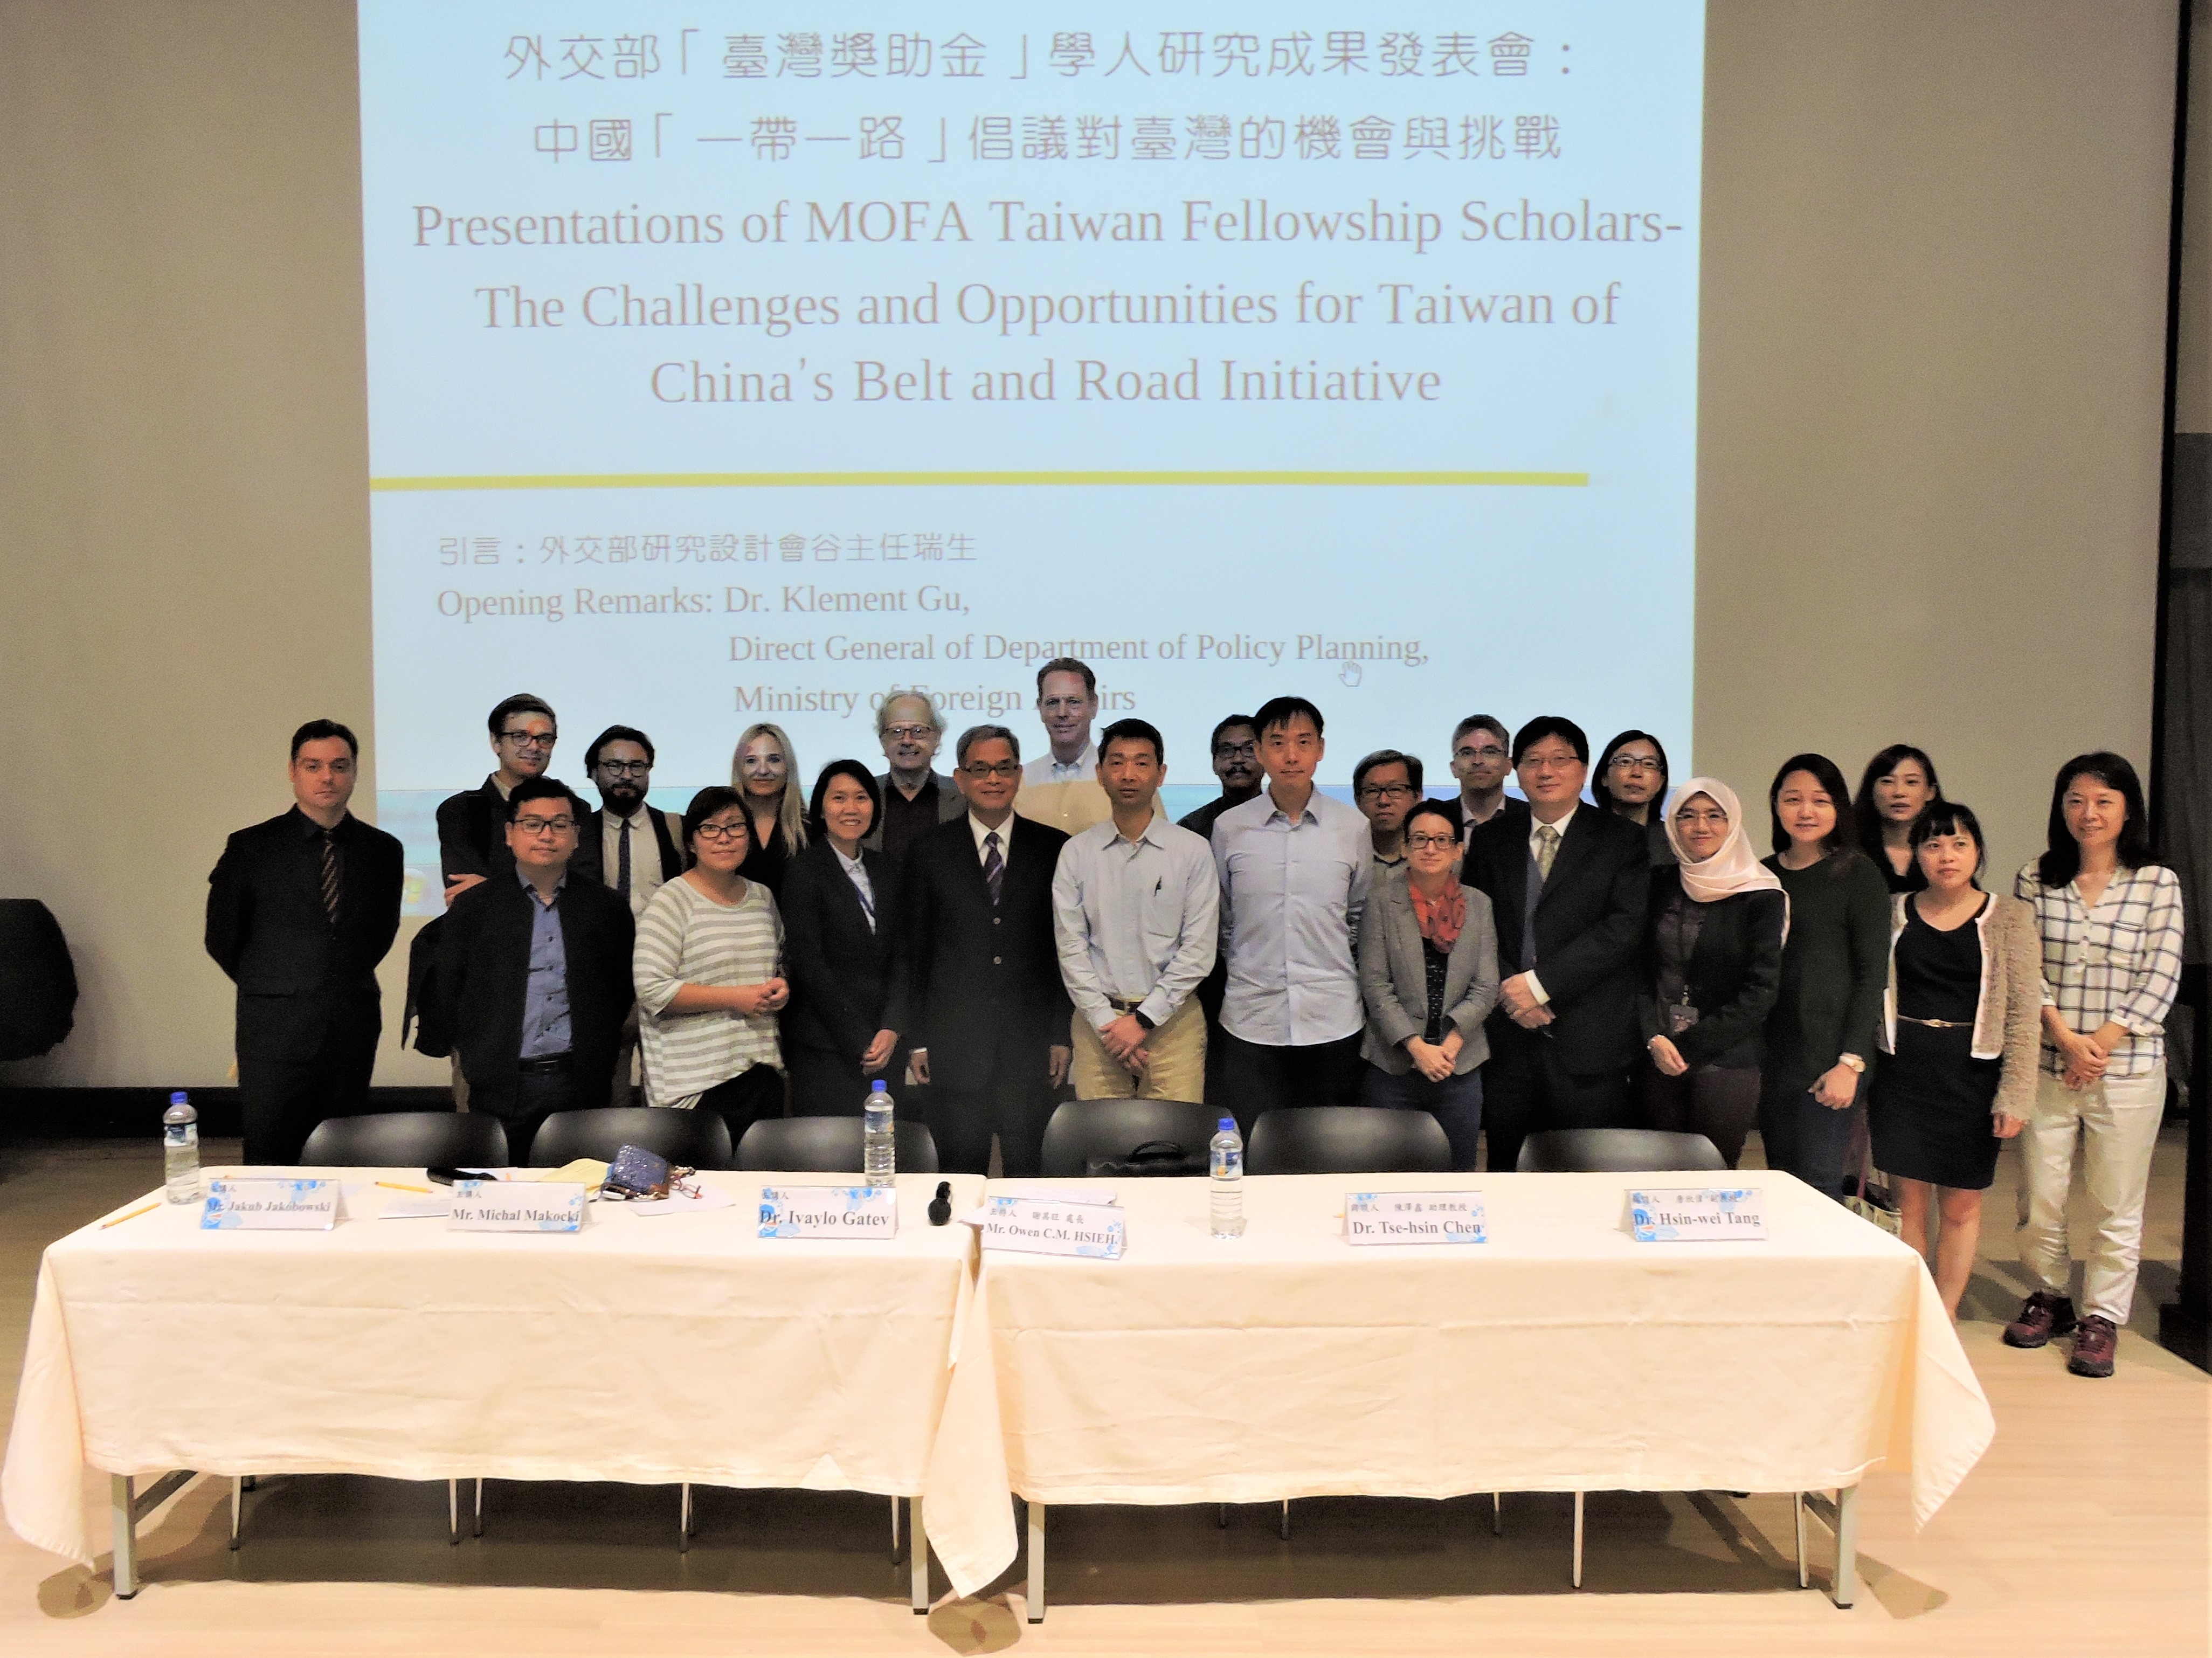 連結: 2018 年臺灣獎助金第四次學人研究成果發表會在北大：中國「一帶一路」倡議對臺灣的機會與挑戰